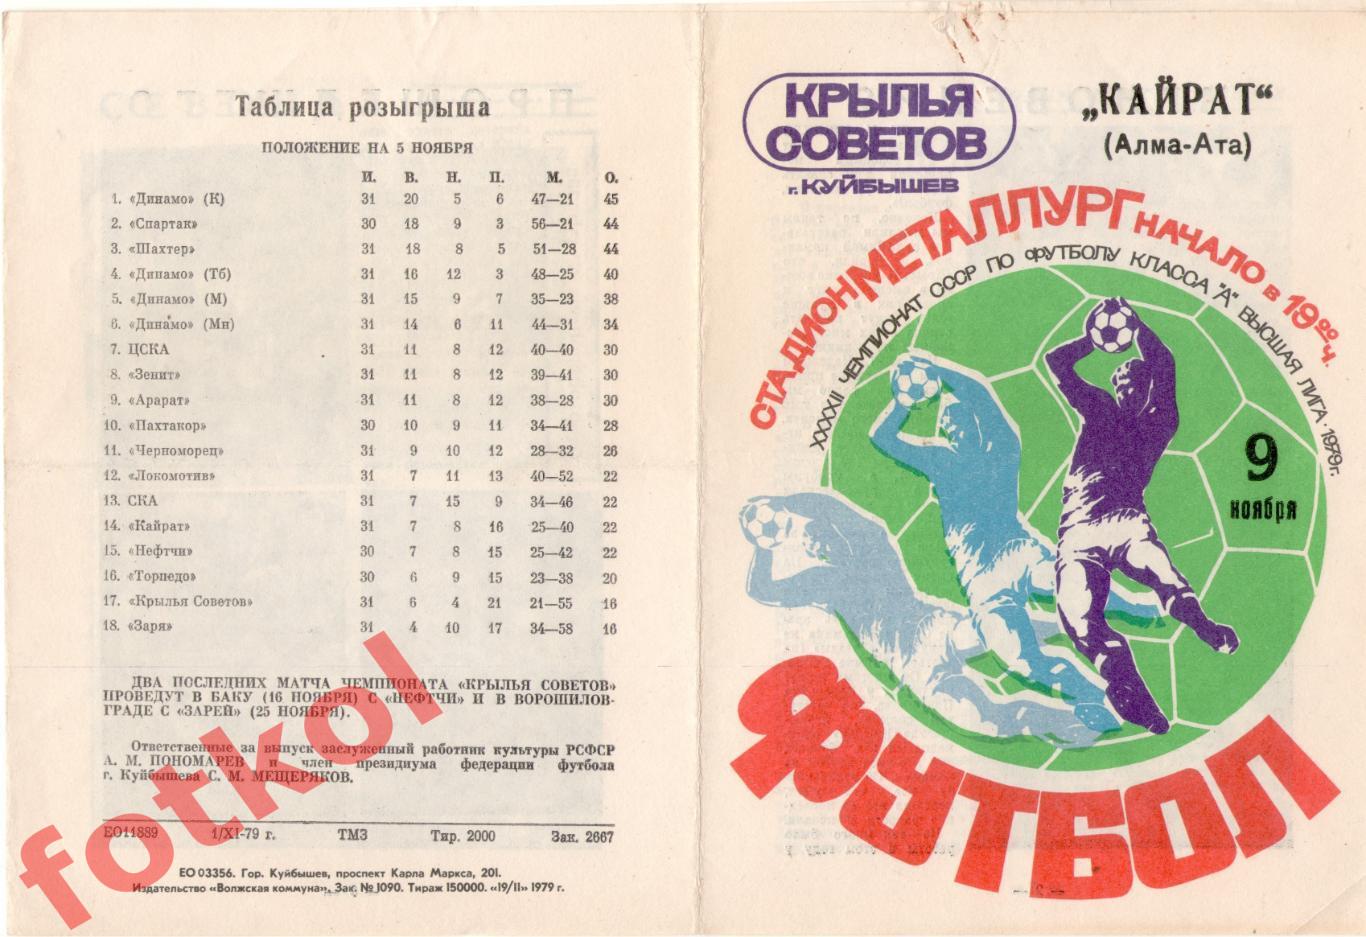 КРЫЛЬЯ СОВЕТОВ Куйбышев/Самара - КАЙРАТ Алма - Ата 09.11.1979